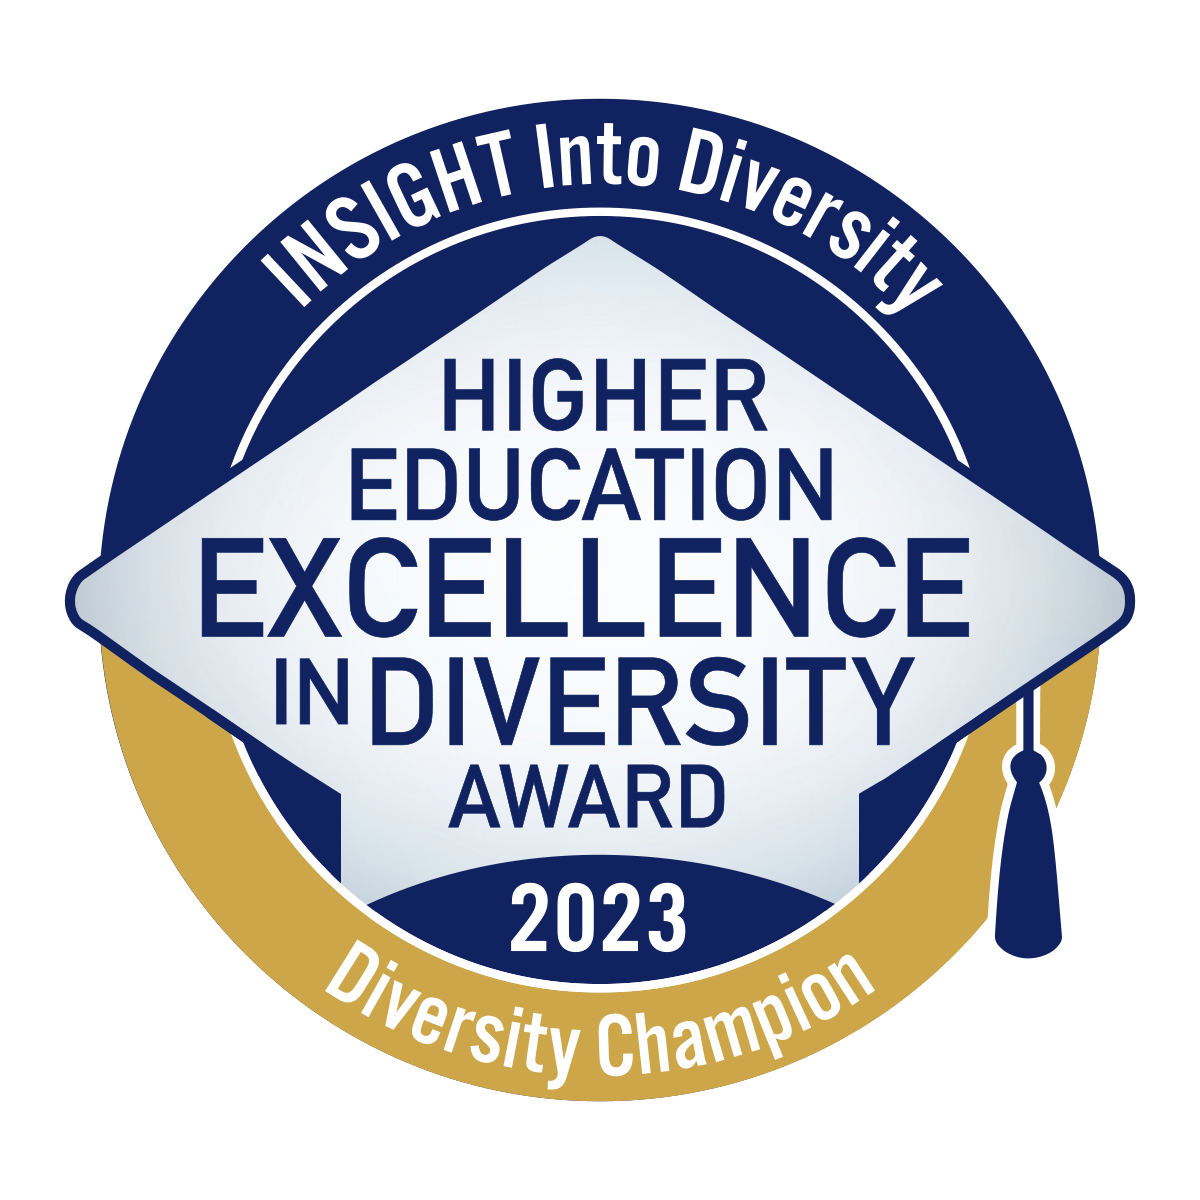 INSIGHT Into Diversity award 2023